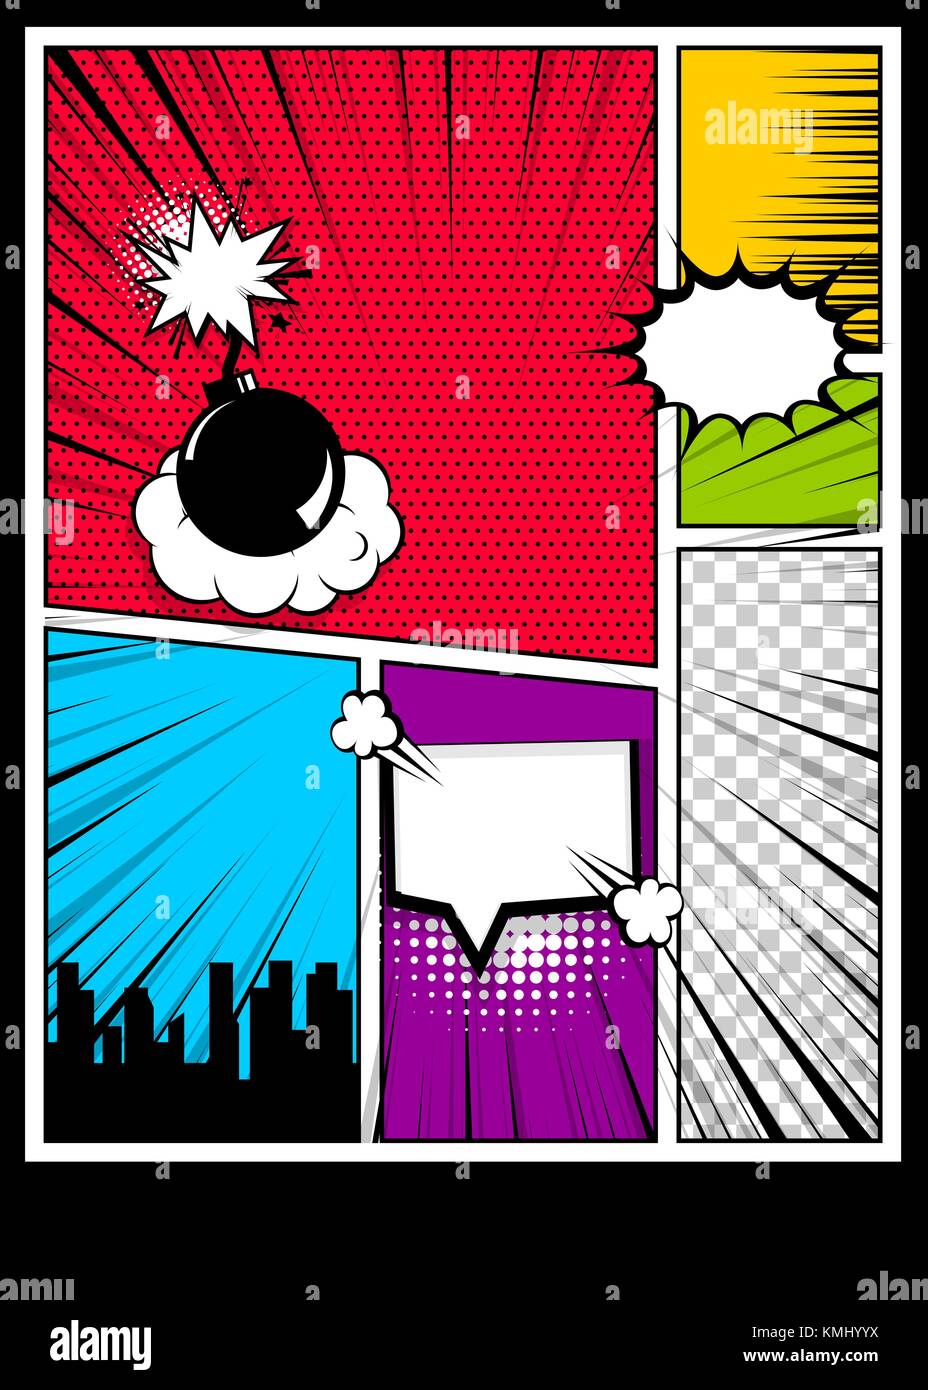 Farbe comics Buch Cover vertikale Hintergrund Stock Vektor